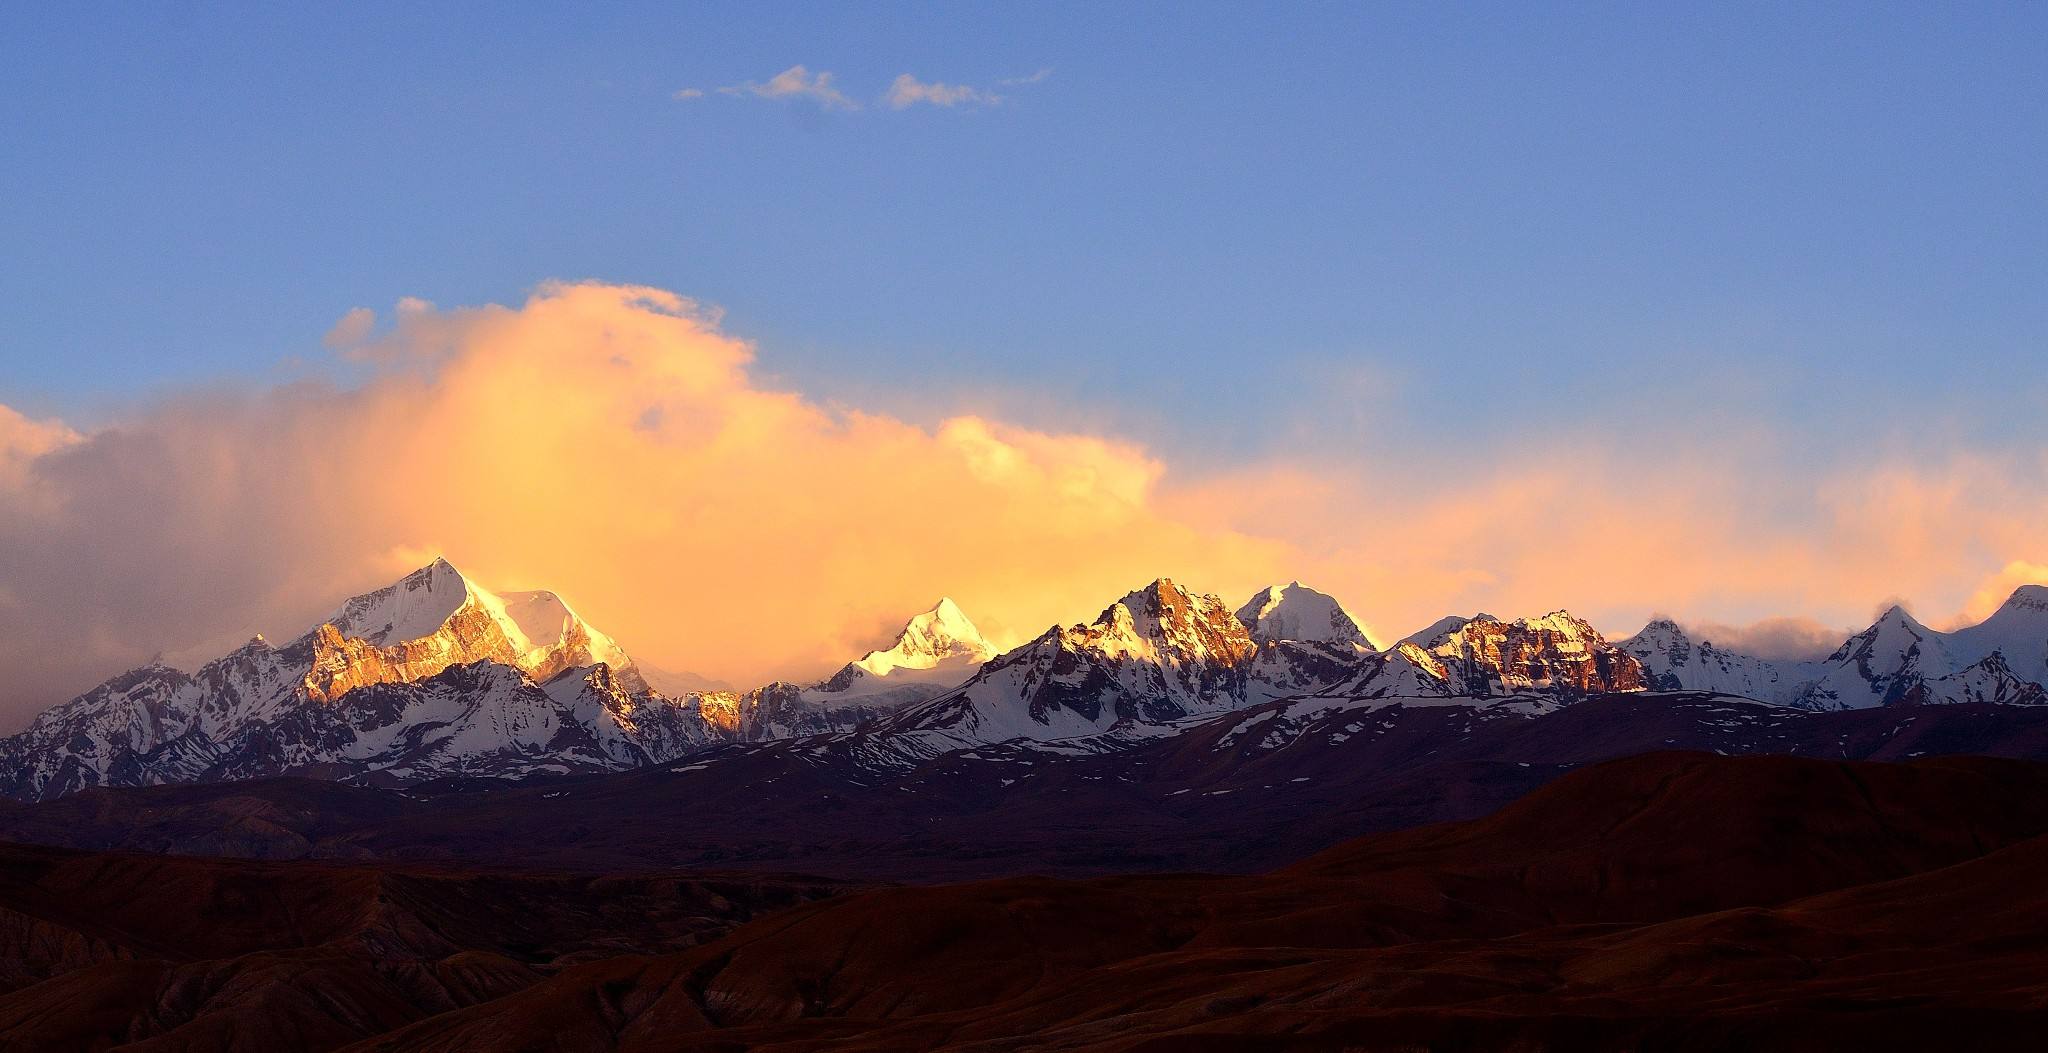 冈仁波齐,冈底斯山主峰,通称雪灵山,著名的佛教圣地之一